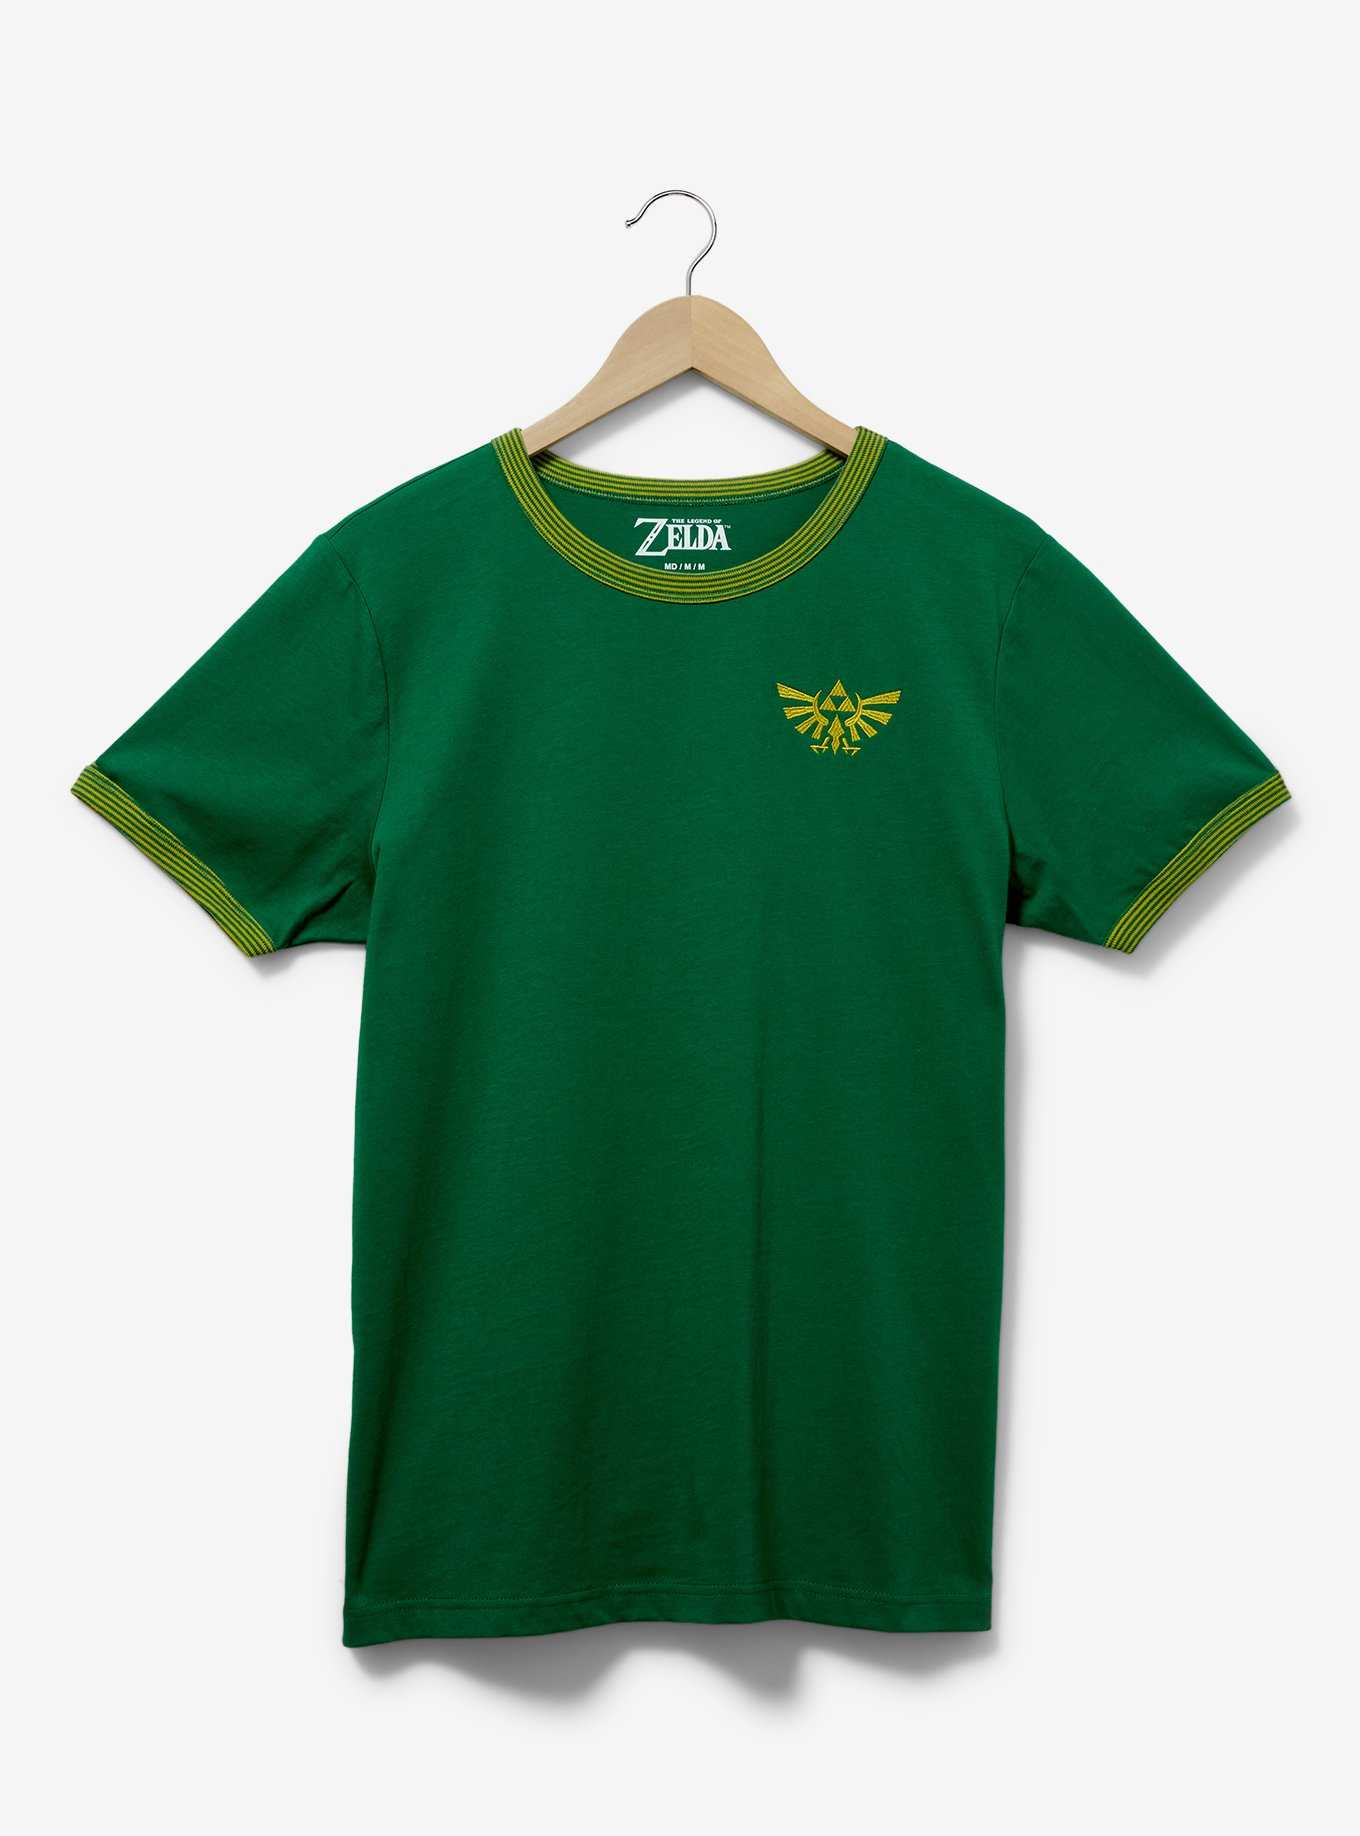 Nintendo The Legend of Zelda Royal Crest Ringer T-Shirt - BoxLunch Exclusive, , hi-res